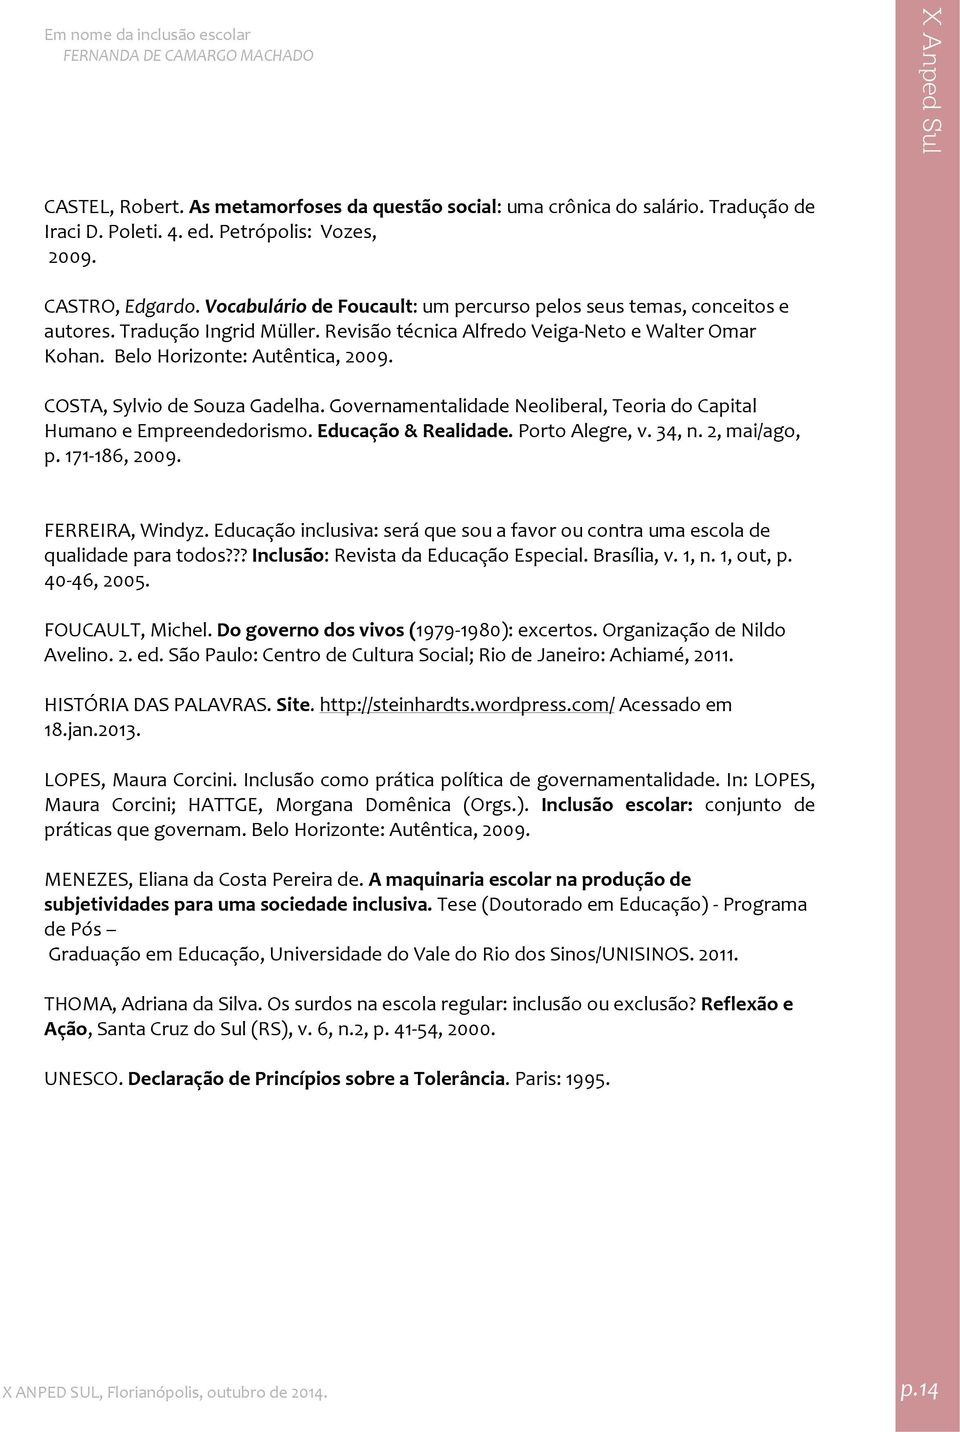 COSTA, Sylvio de Souza Gadelha. Governamentalidade Neoliberal, Teoria do Capital Humano e Empreendedorismo. Educação & Realidade. Porto Alegre, v. 34, n. 2, mai/ago, p. 171 186, 2009.